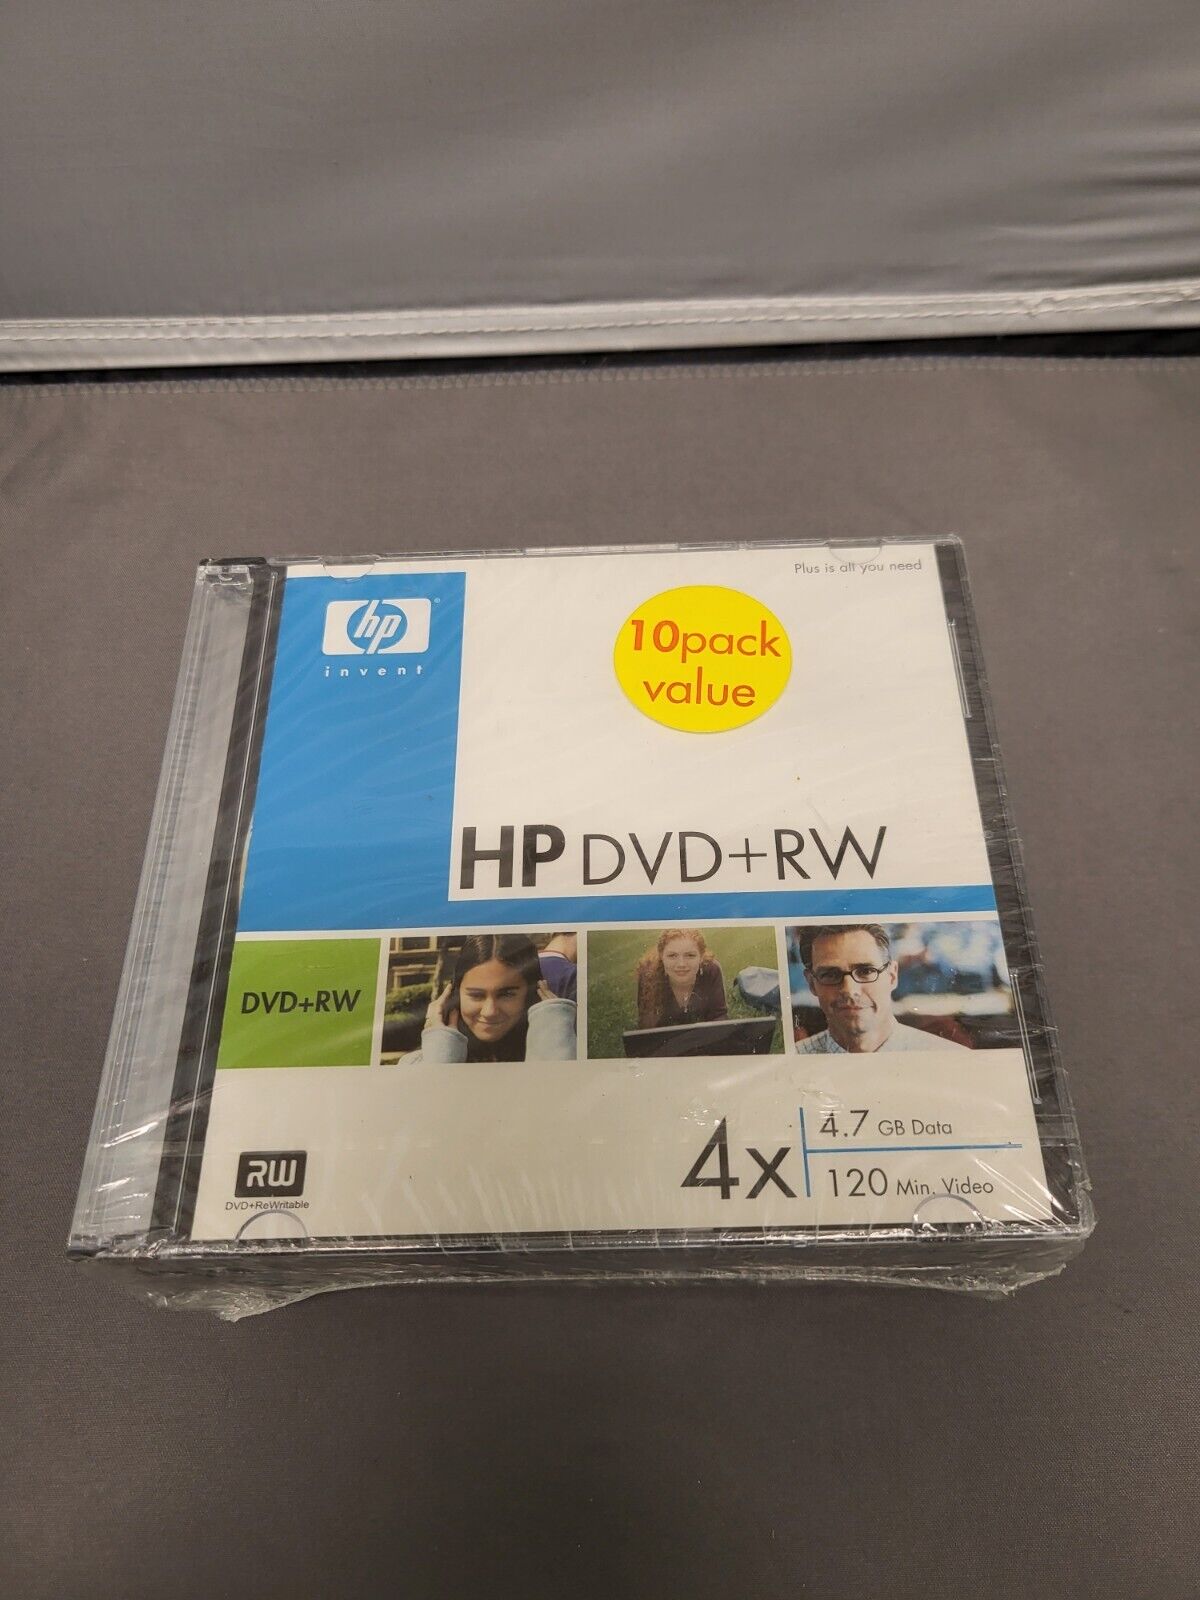 HP Invent DW00021M DVD+RW 4X, 4.7GB Data - 120 Min Video - 10 Pack